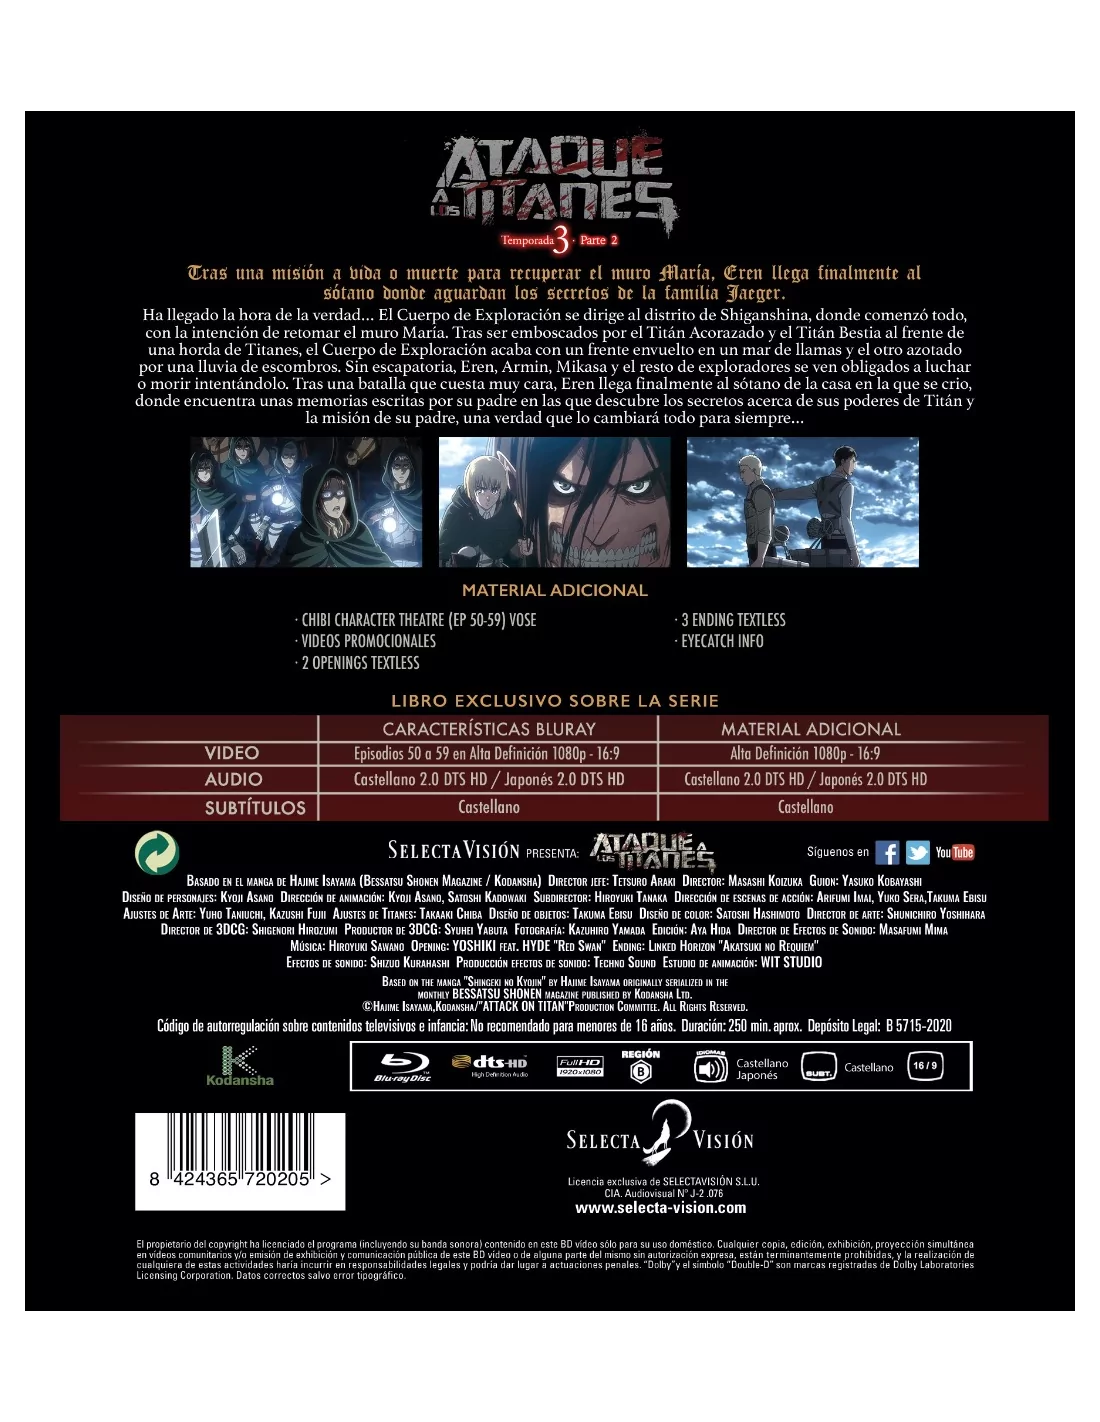 Ataque a los Titanes Temporada Final. Parte 2 DVD [DVD]